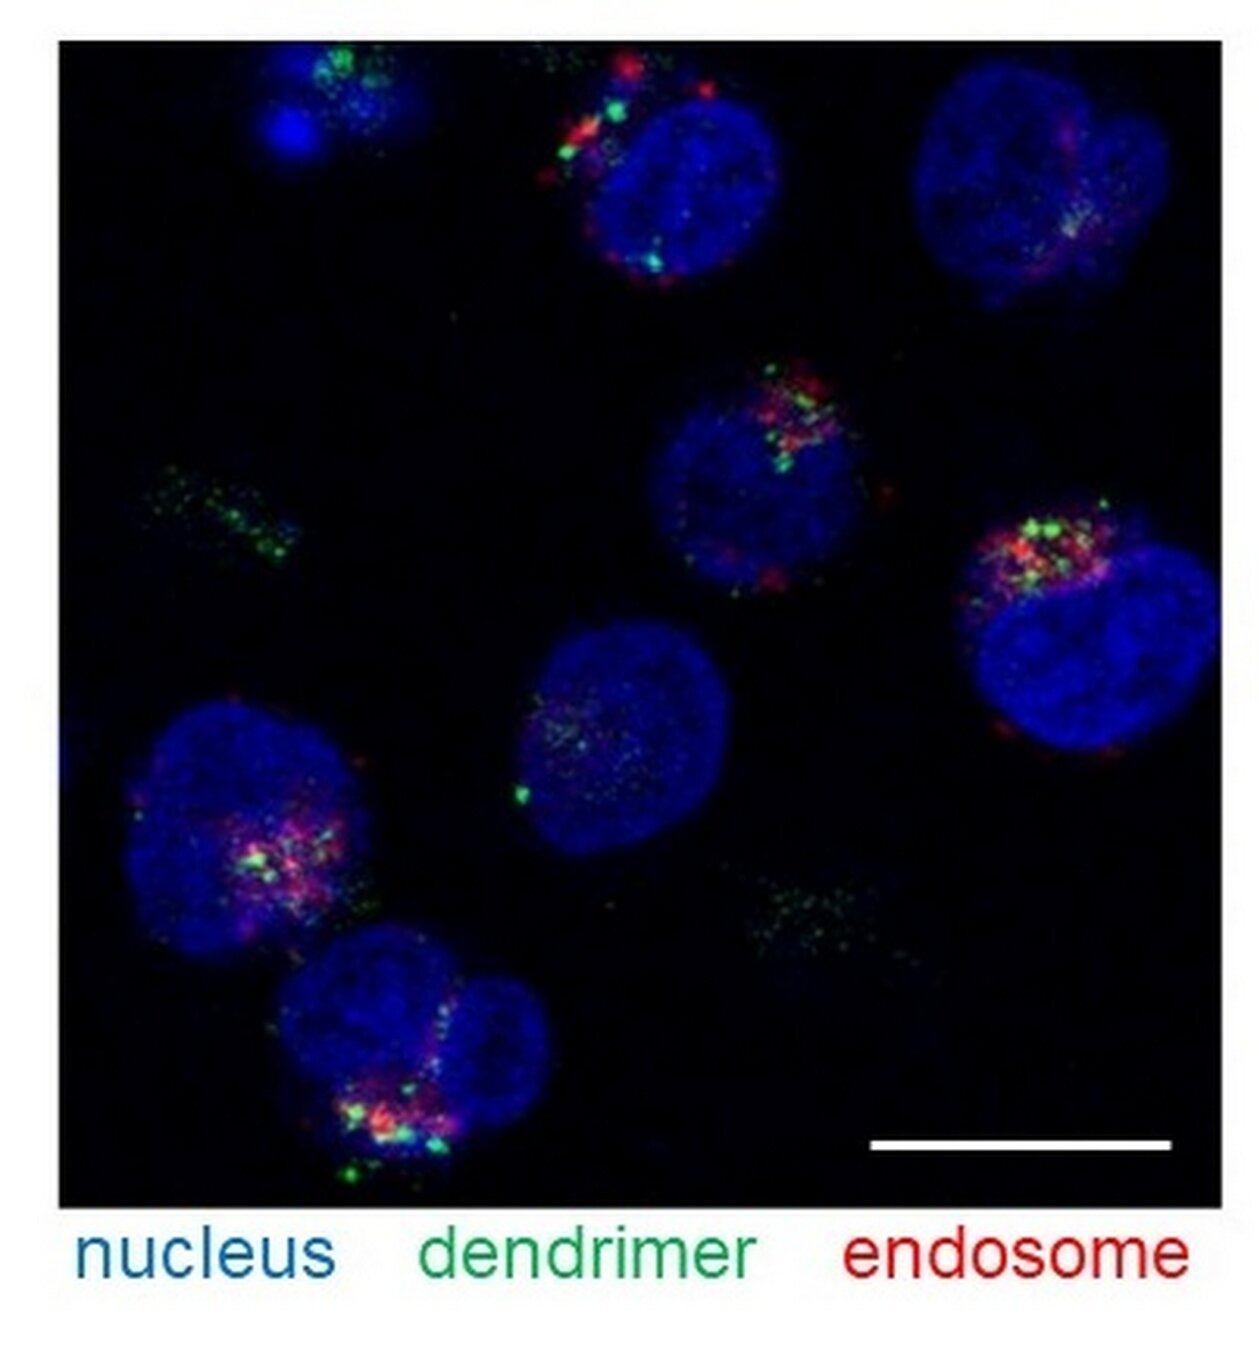 A novel nanoplatform for delivering medication into lymphocytes